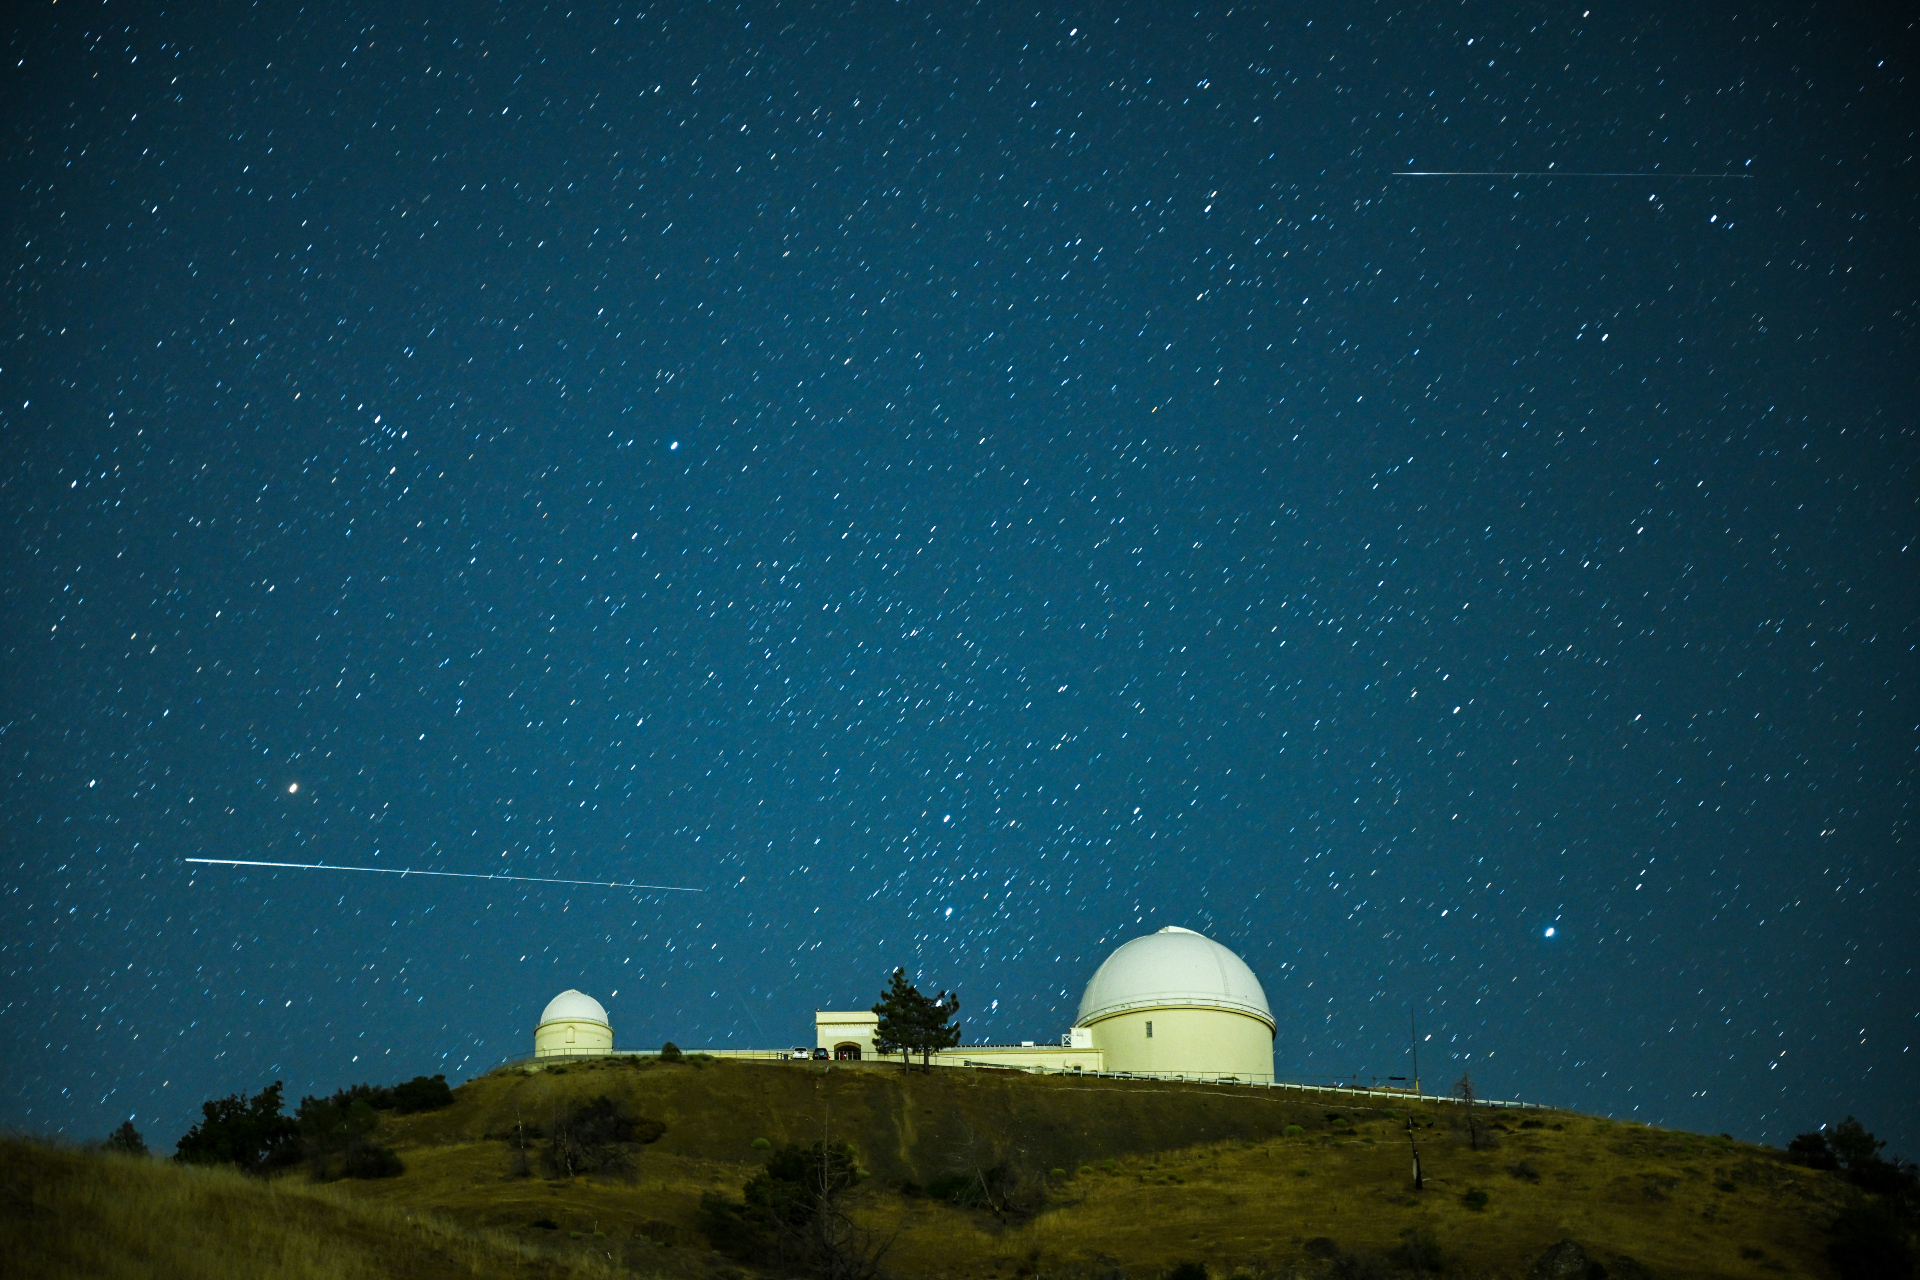 Un largo tren blanco del meteoro Perseida pasa sobre la estructura abovedada del Observatorio del Lago en dirección horizontal contra un cielo estrellado.